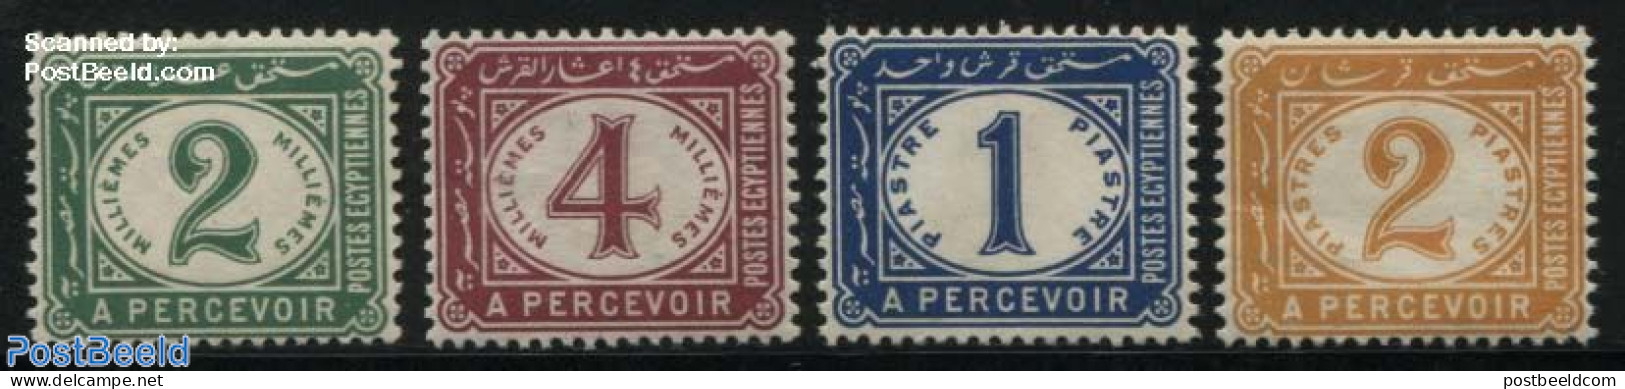 Egypt (Kingdom) 1889 Postage Due 4v, Unused (hinged) - Service